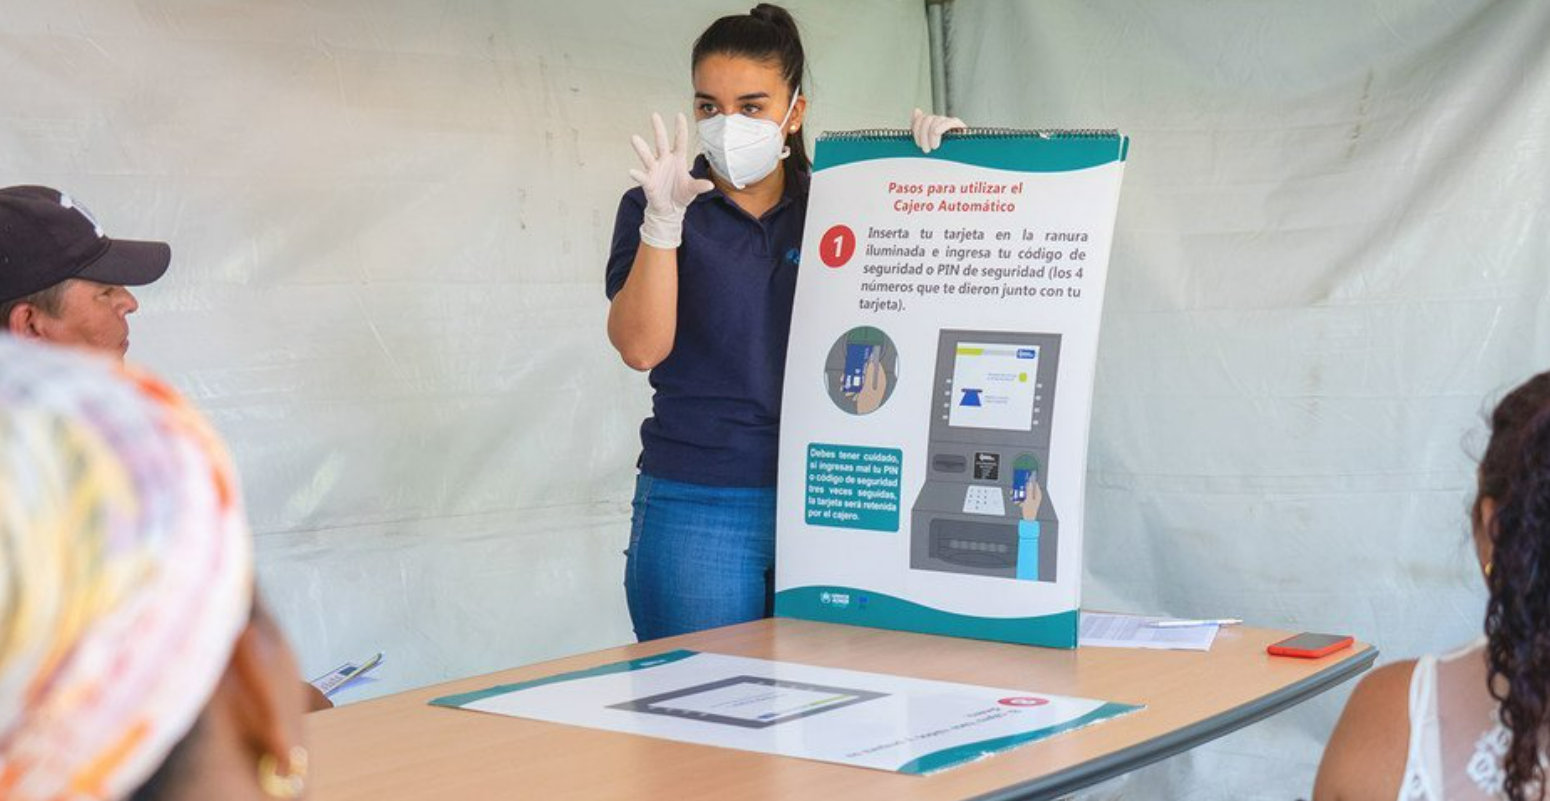 Cinq raisons pour lesquelles le Costa Rica lutte avec succès contre la pandémie de coronavirus | UN News